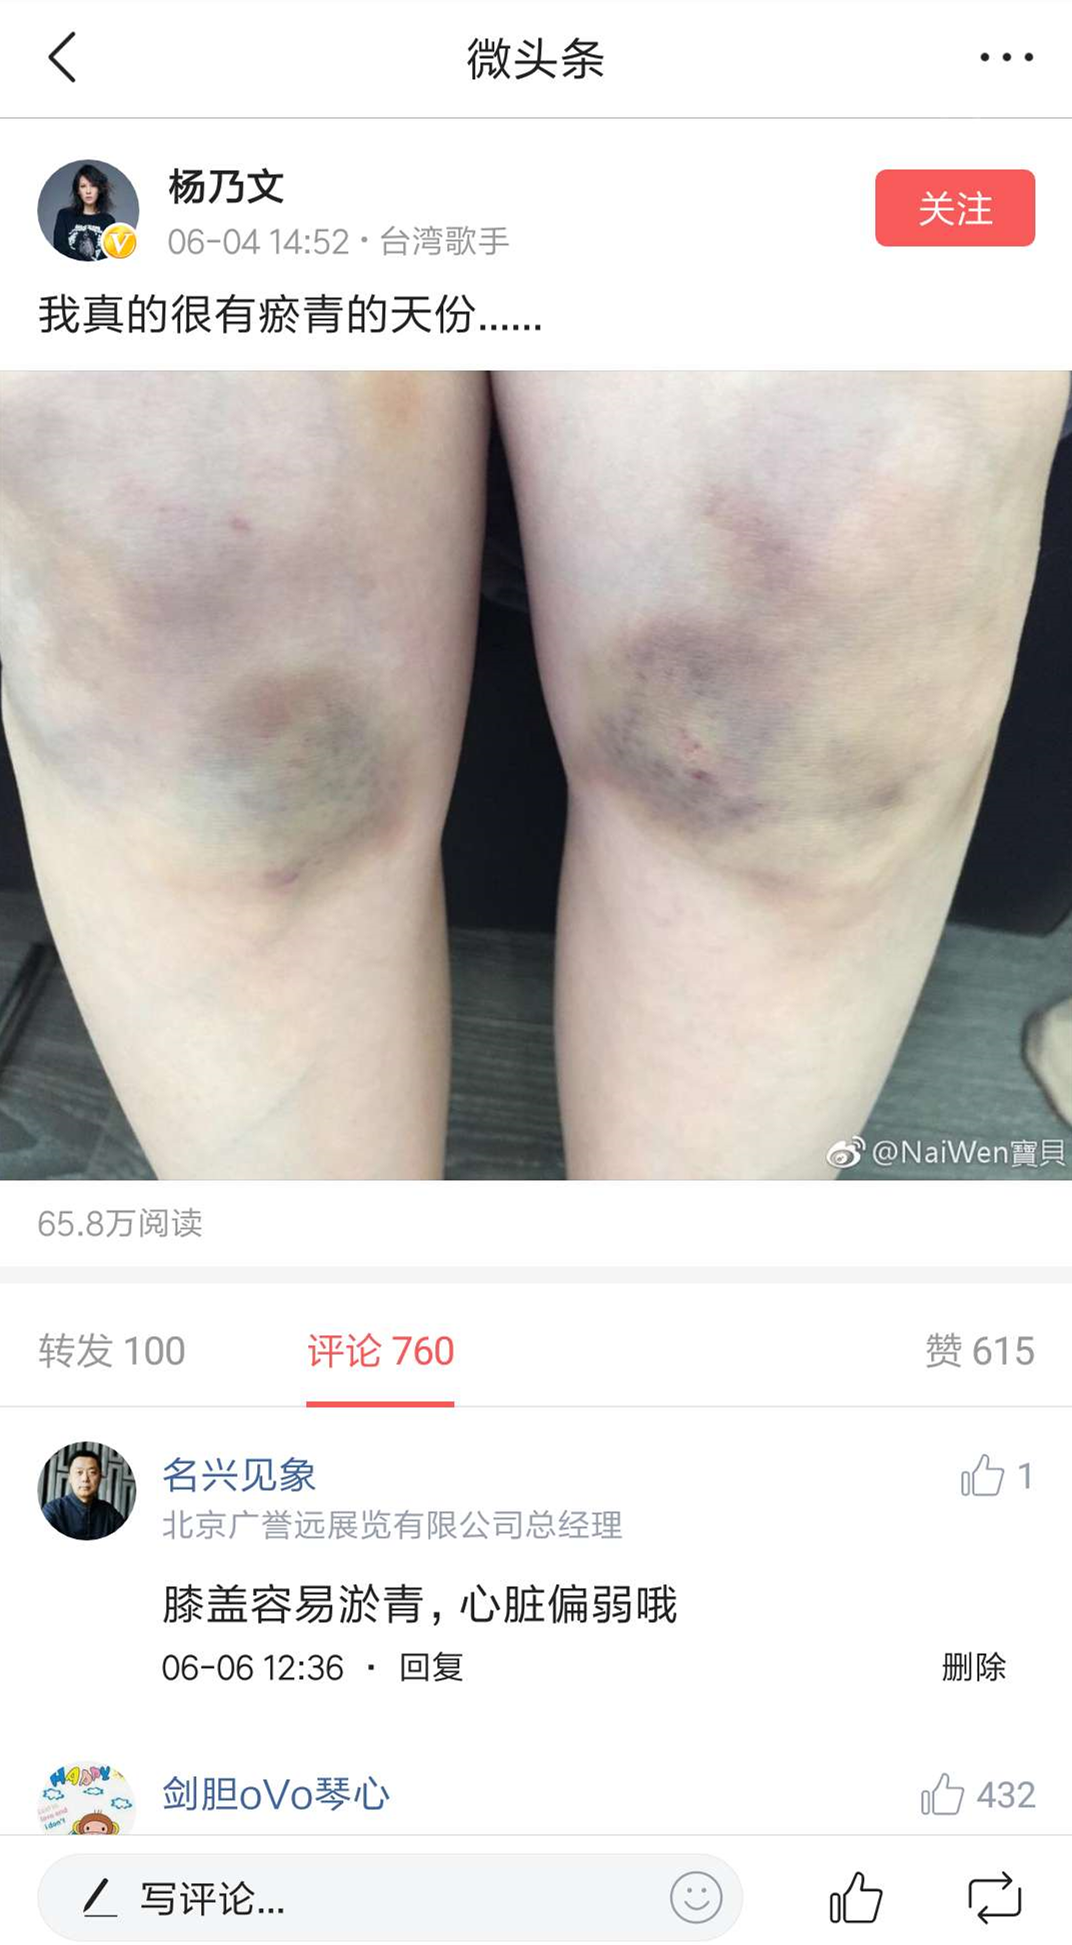 前两天在微头条看到杨乃文贴的膝盖淤青的照片,我当是还回复了"膝盖